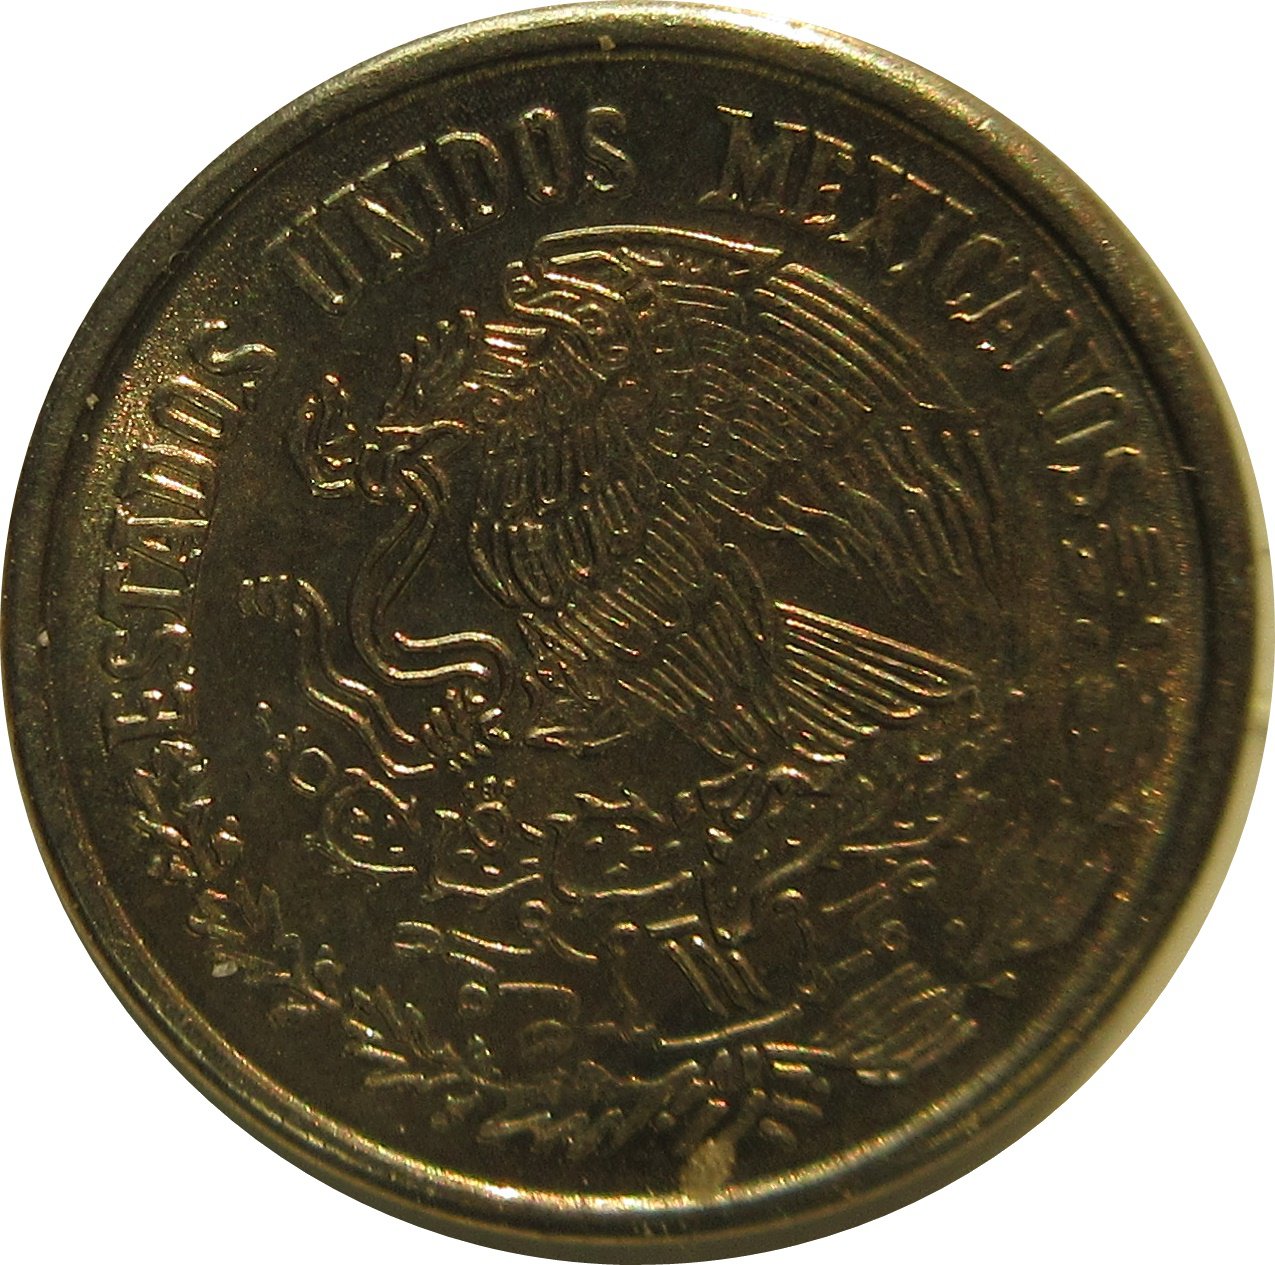 1977 Mexico 10 Centavos